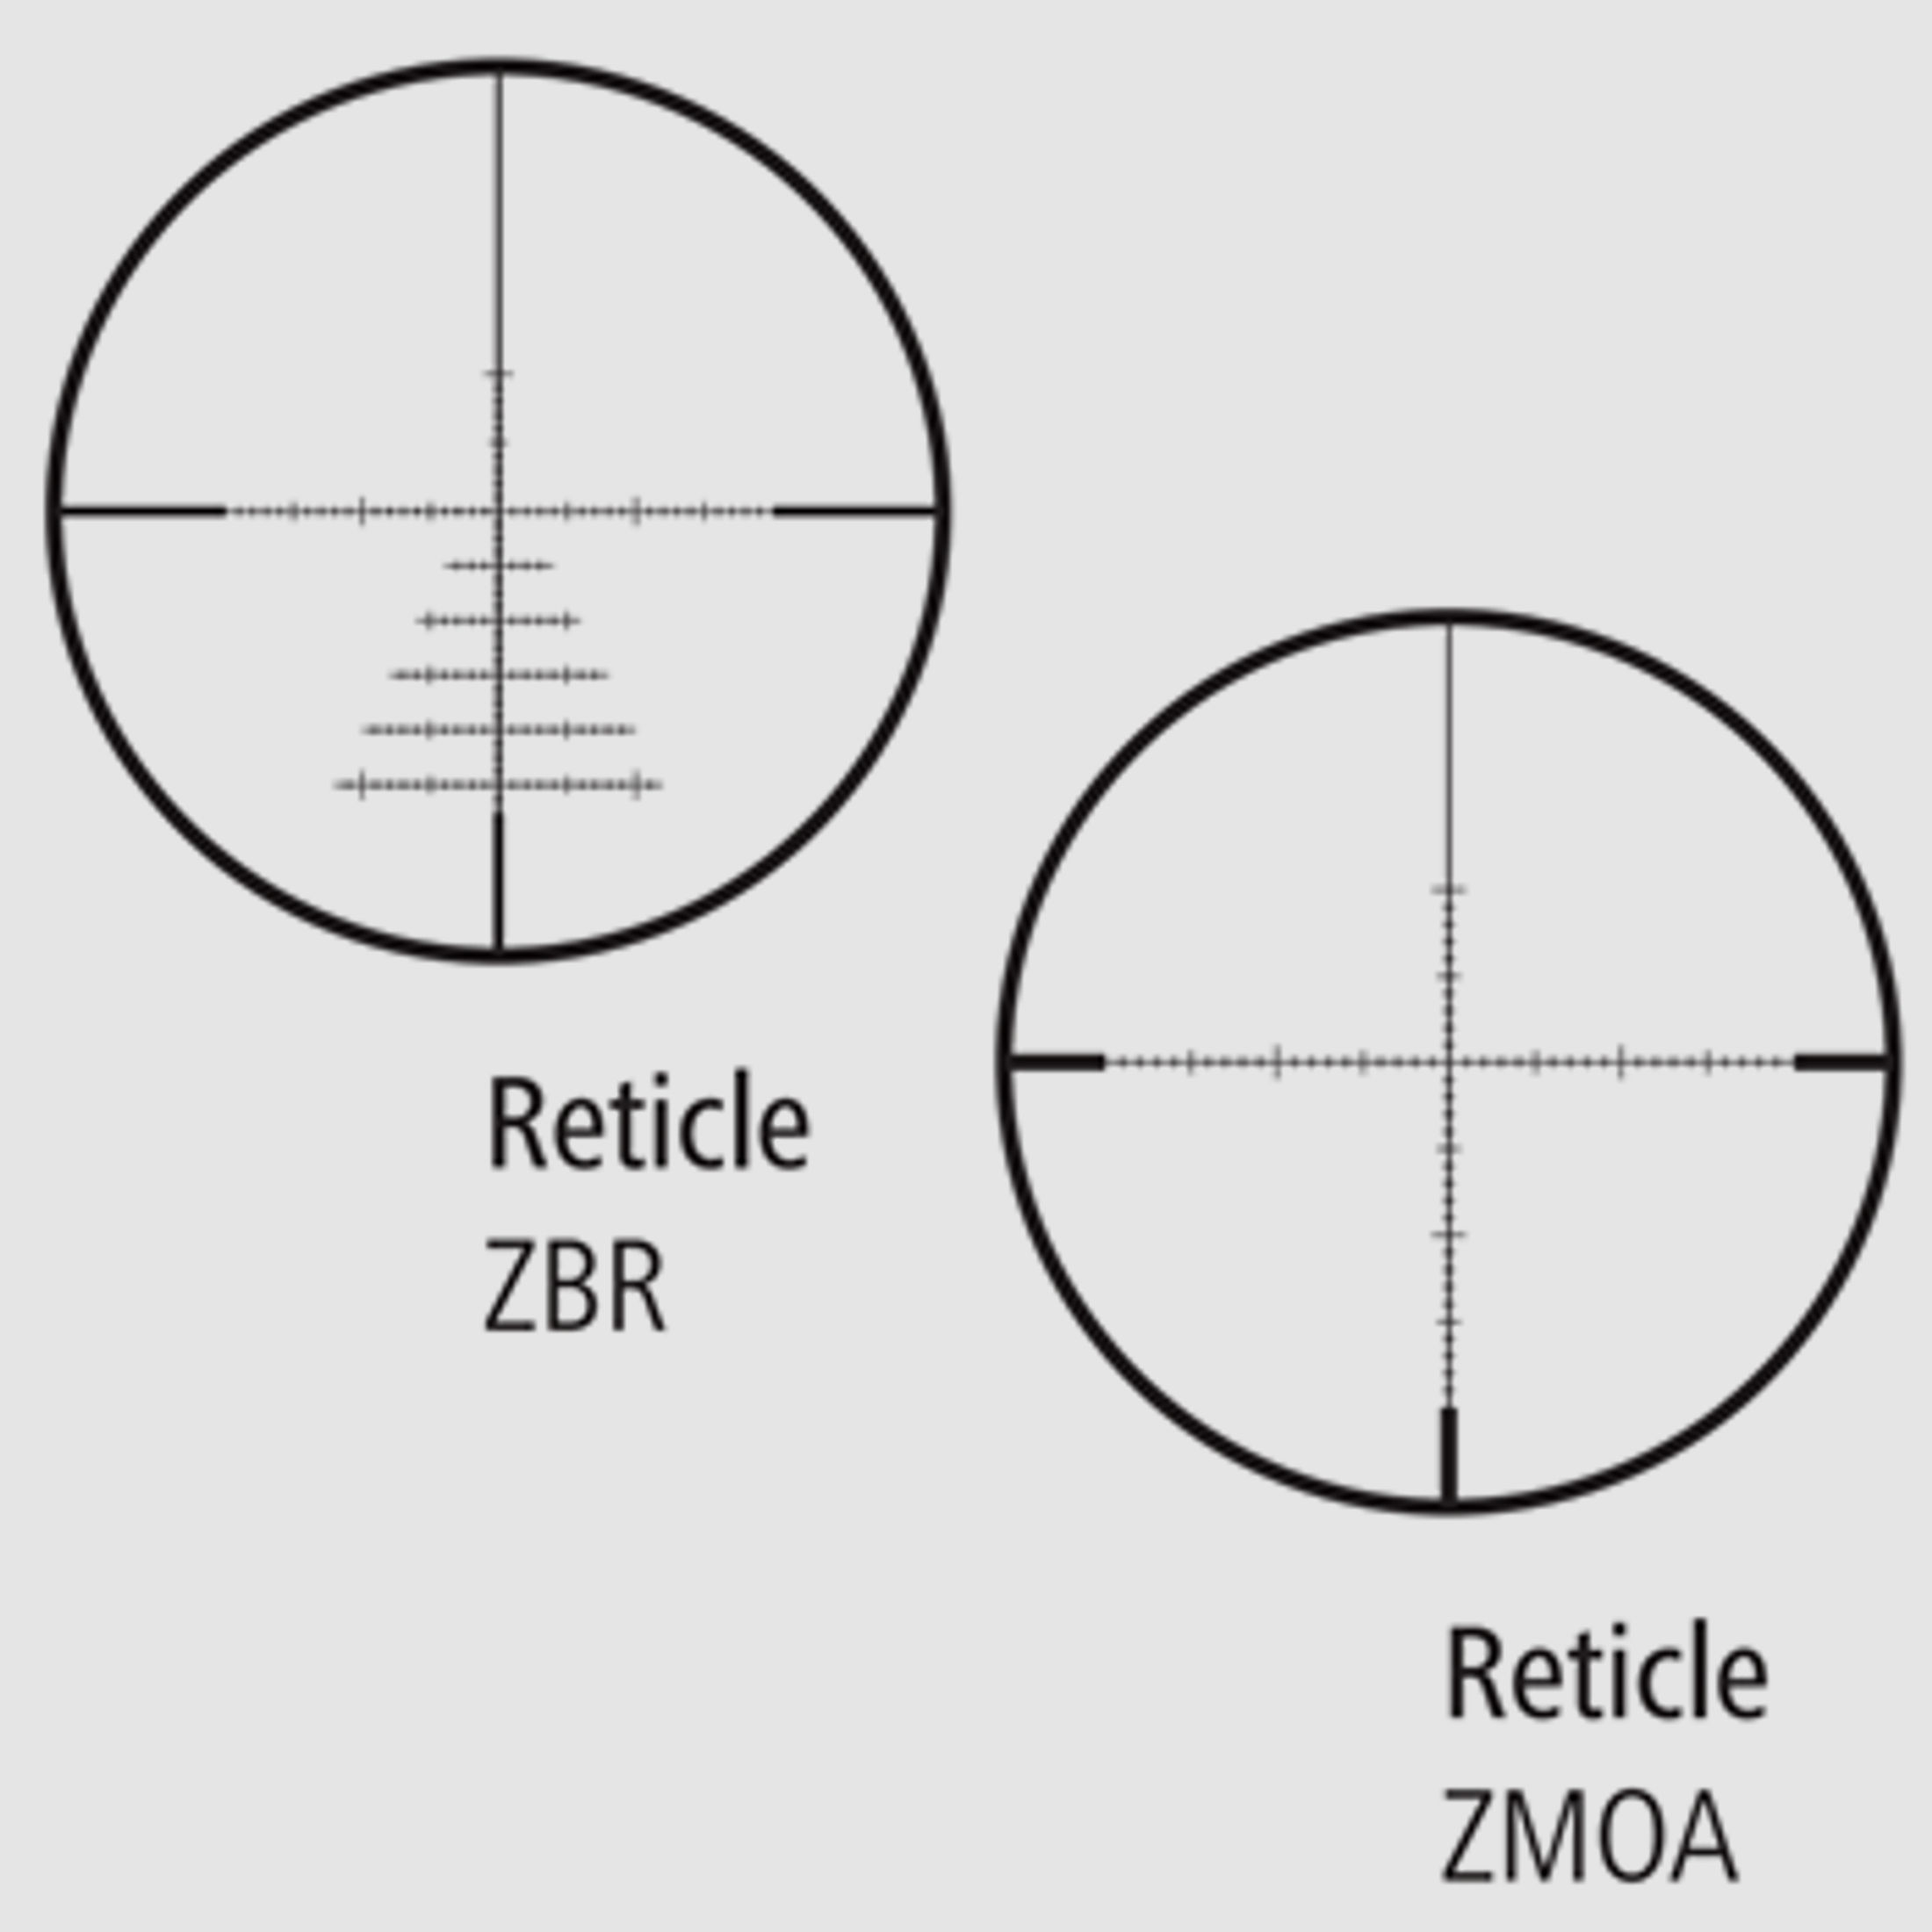 ZEISS Zielfernrohr mit Leuchtabsehen 6-24x50 Conquest V4 (30mm) Abs. ZMOAi-1 ASV Höhe